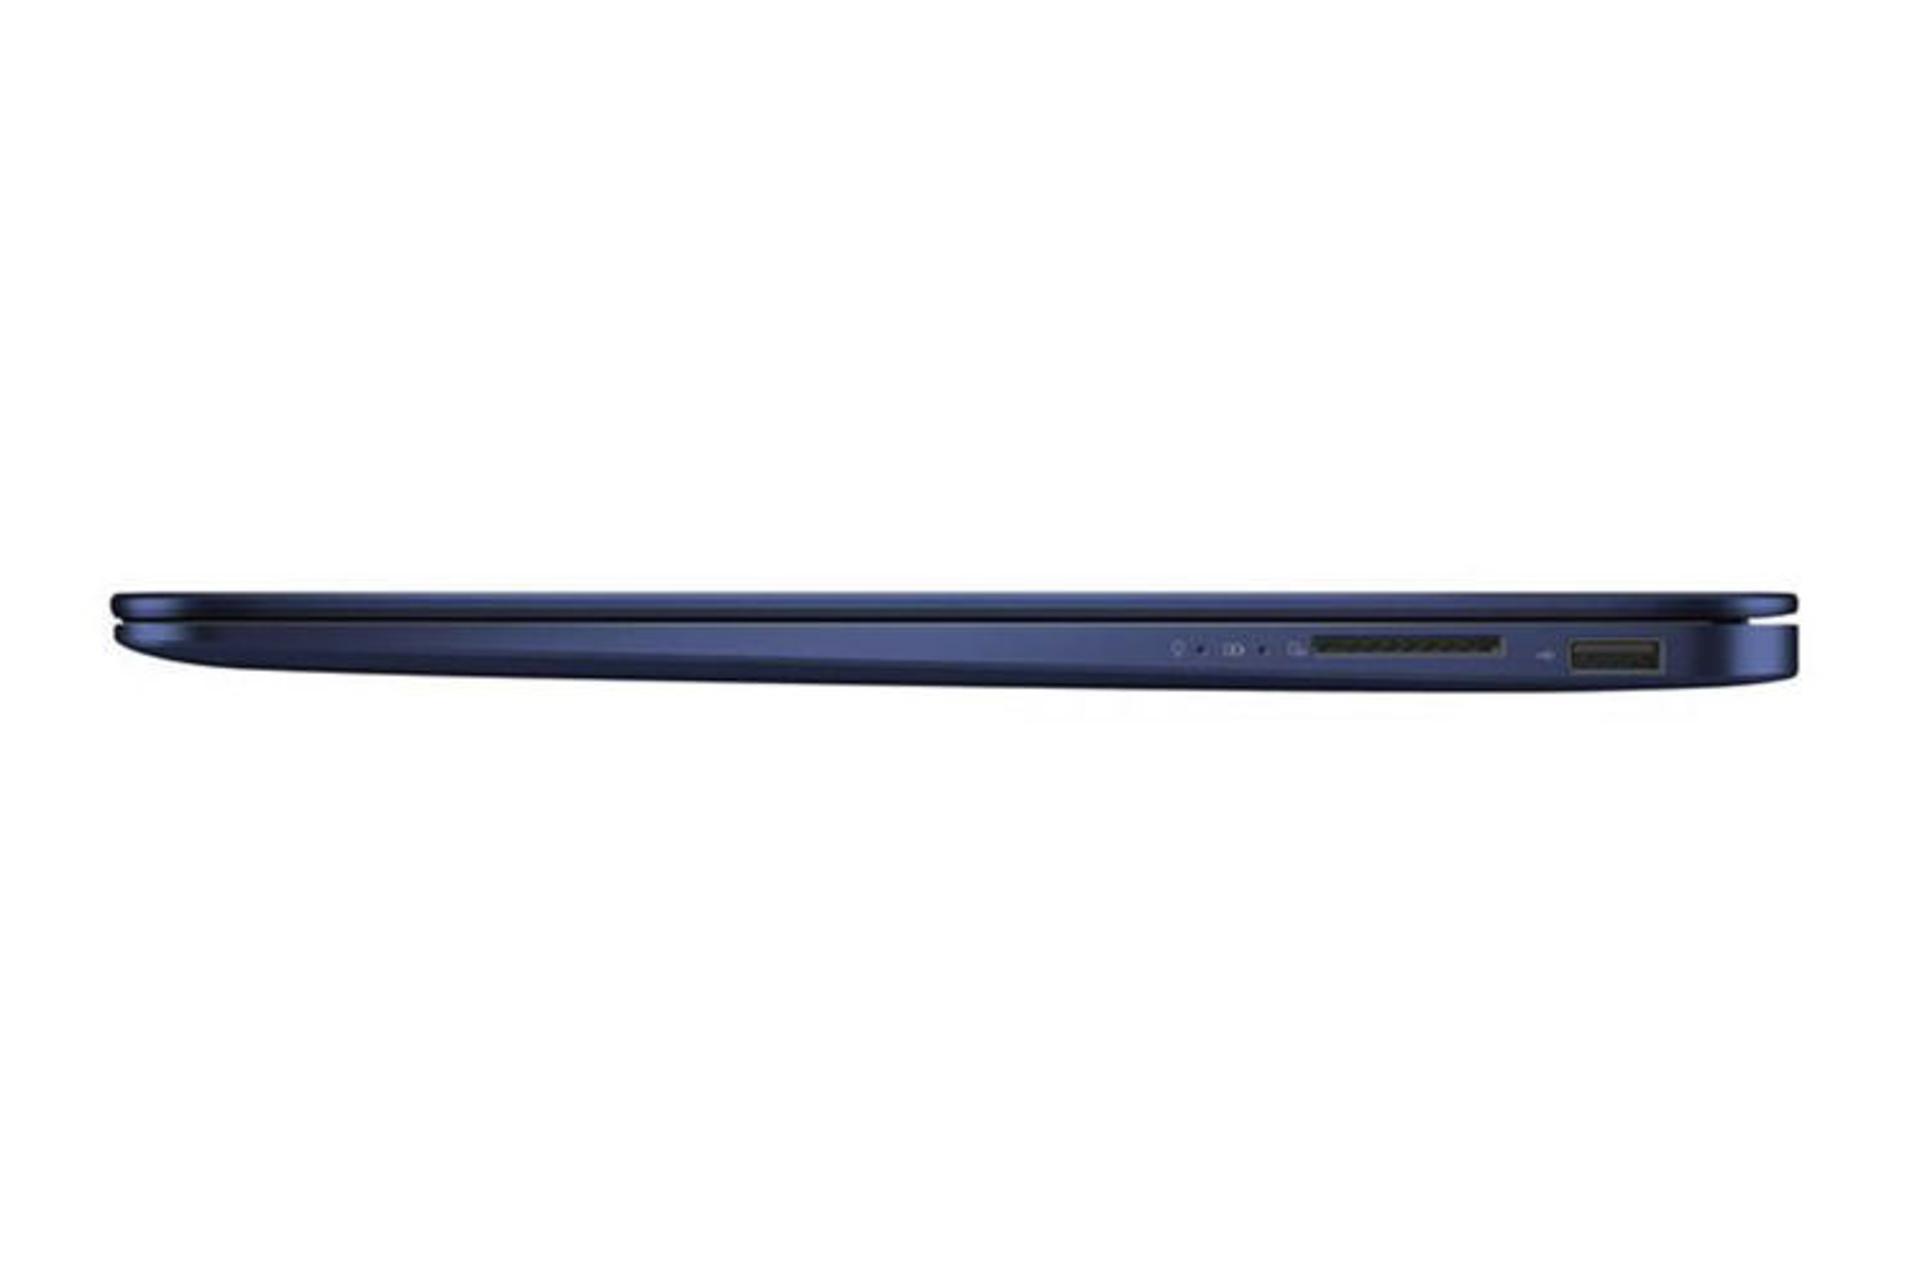 Asus ZenBook UX430UA